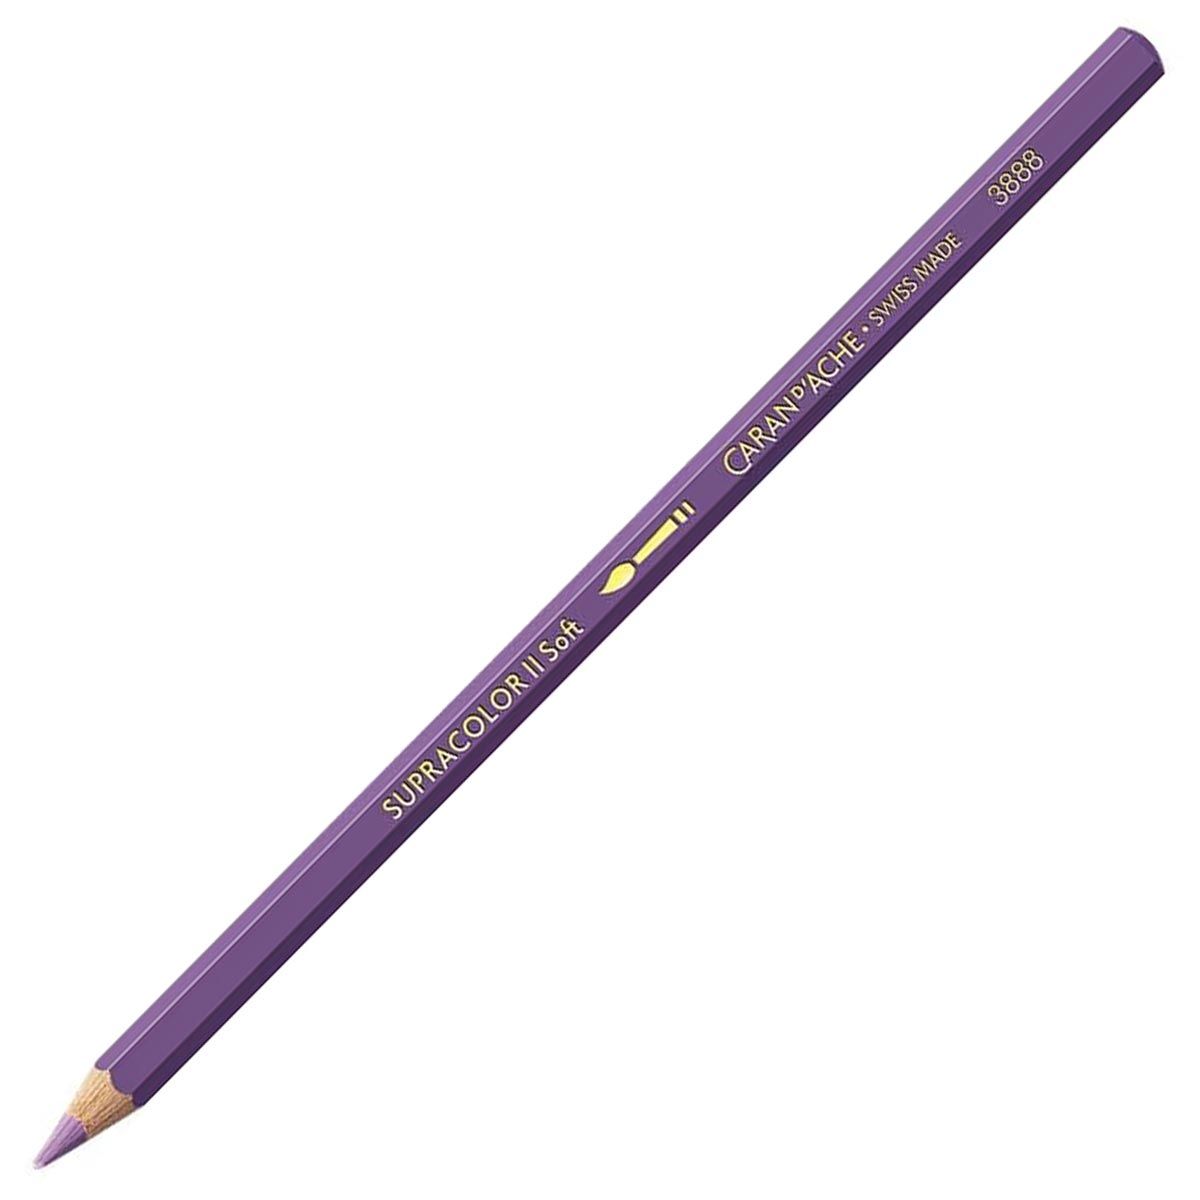 Caran d'Ache Supracolor ll Soft Aquarelle Pencil - Mauve 111